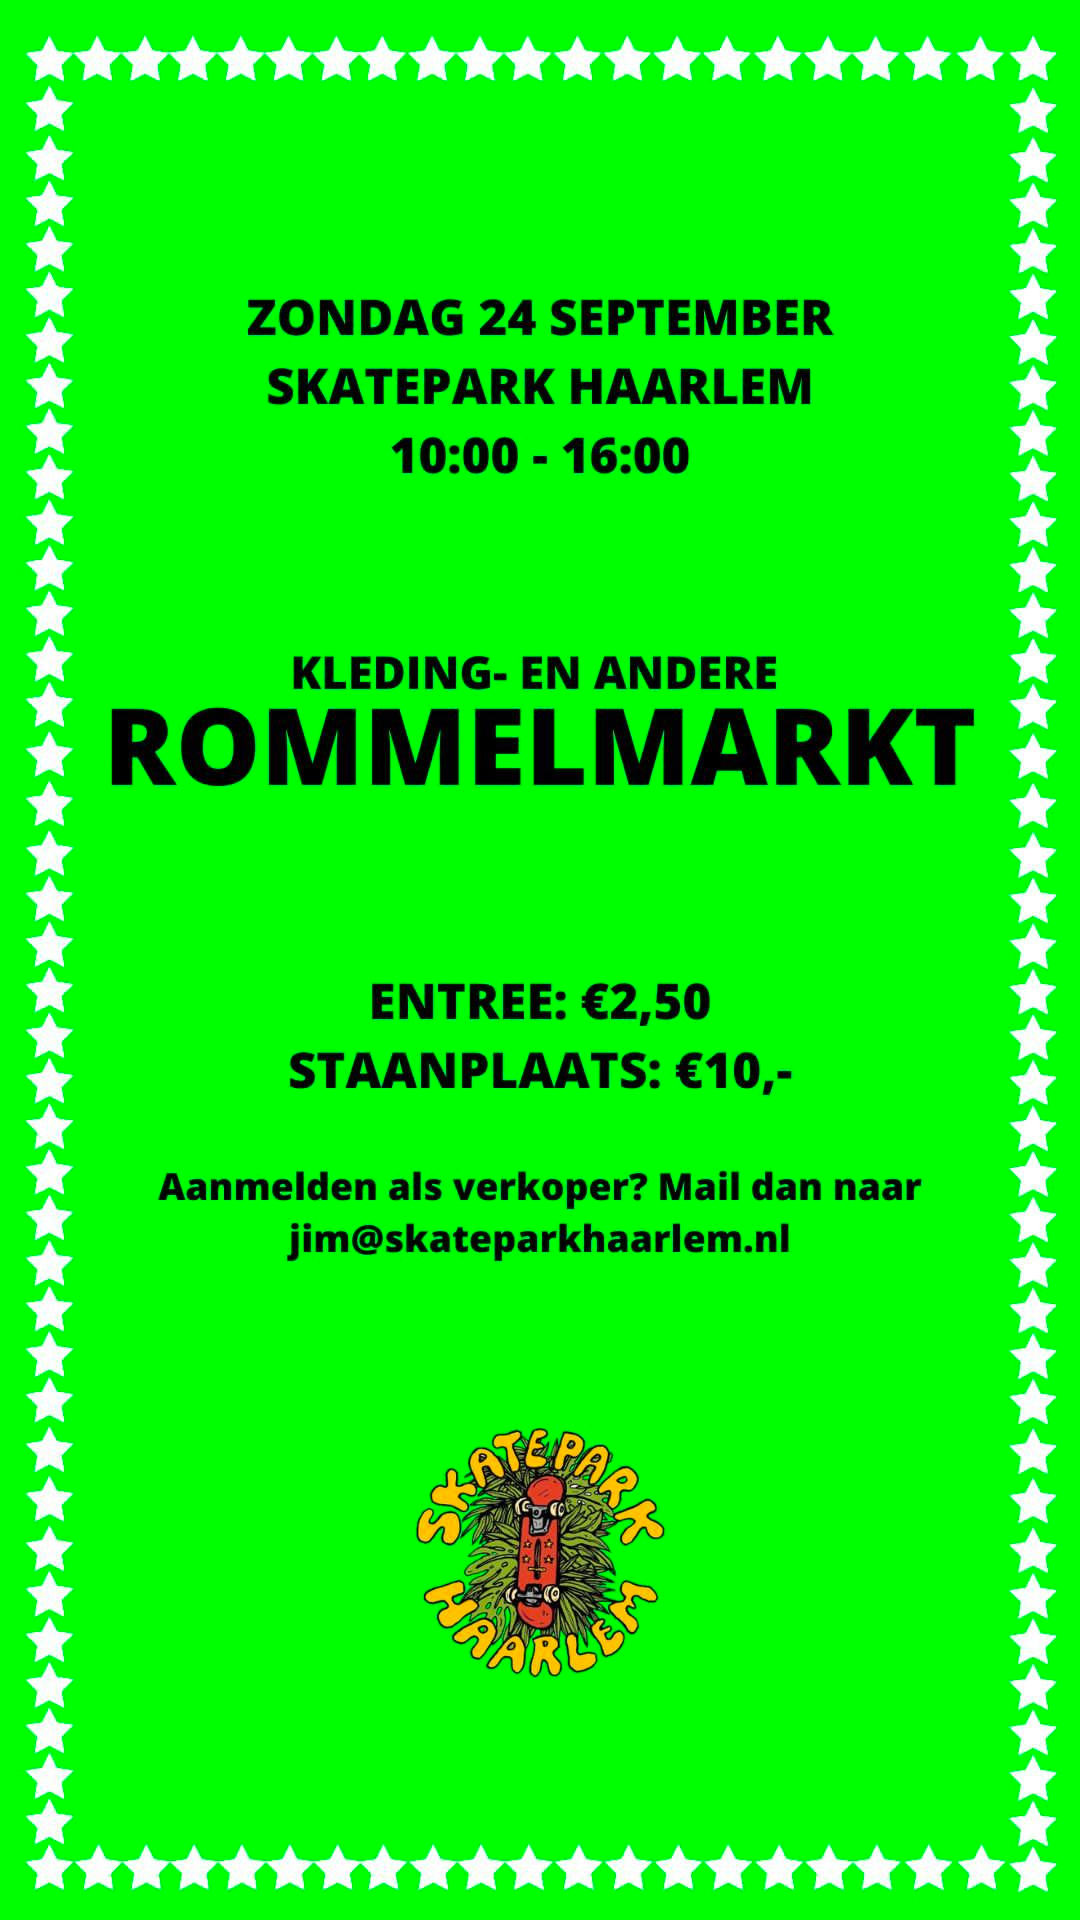 Rommelmarkt in Skatepark Haarlem